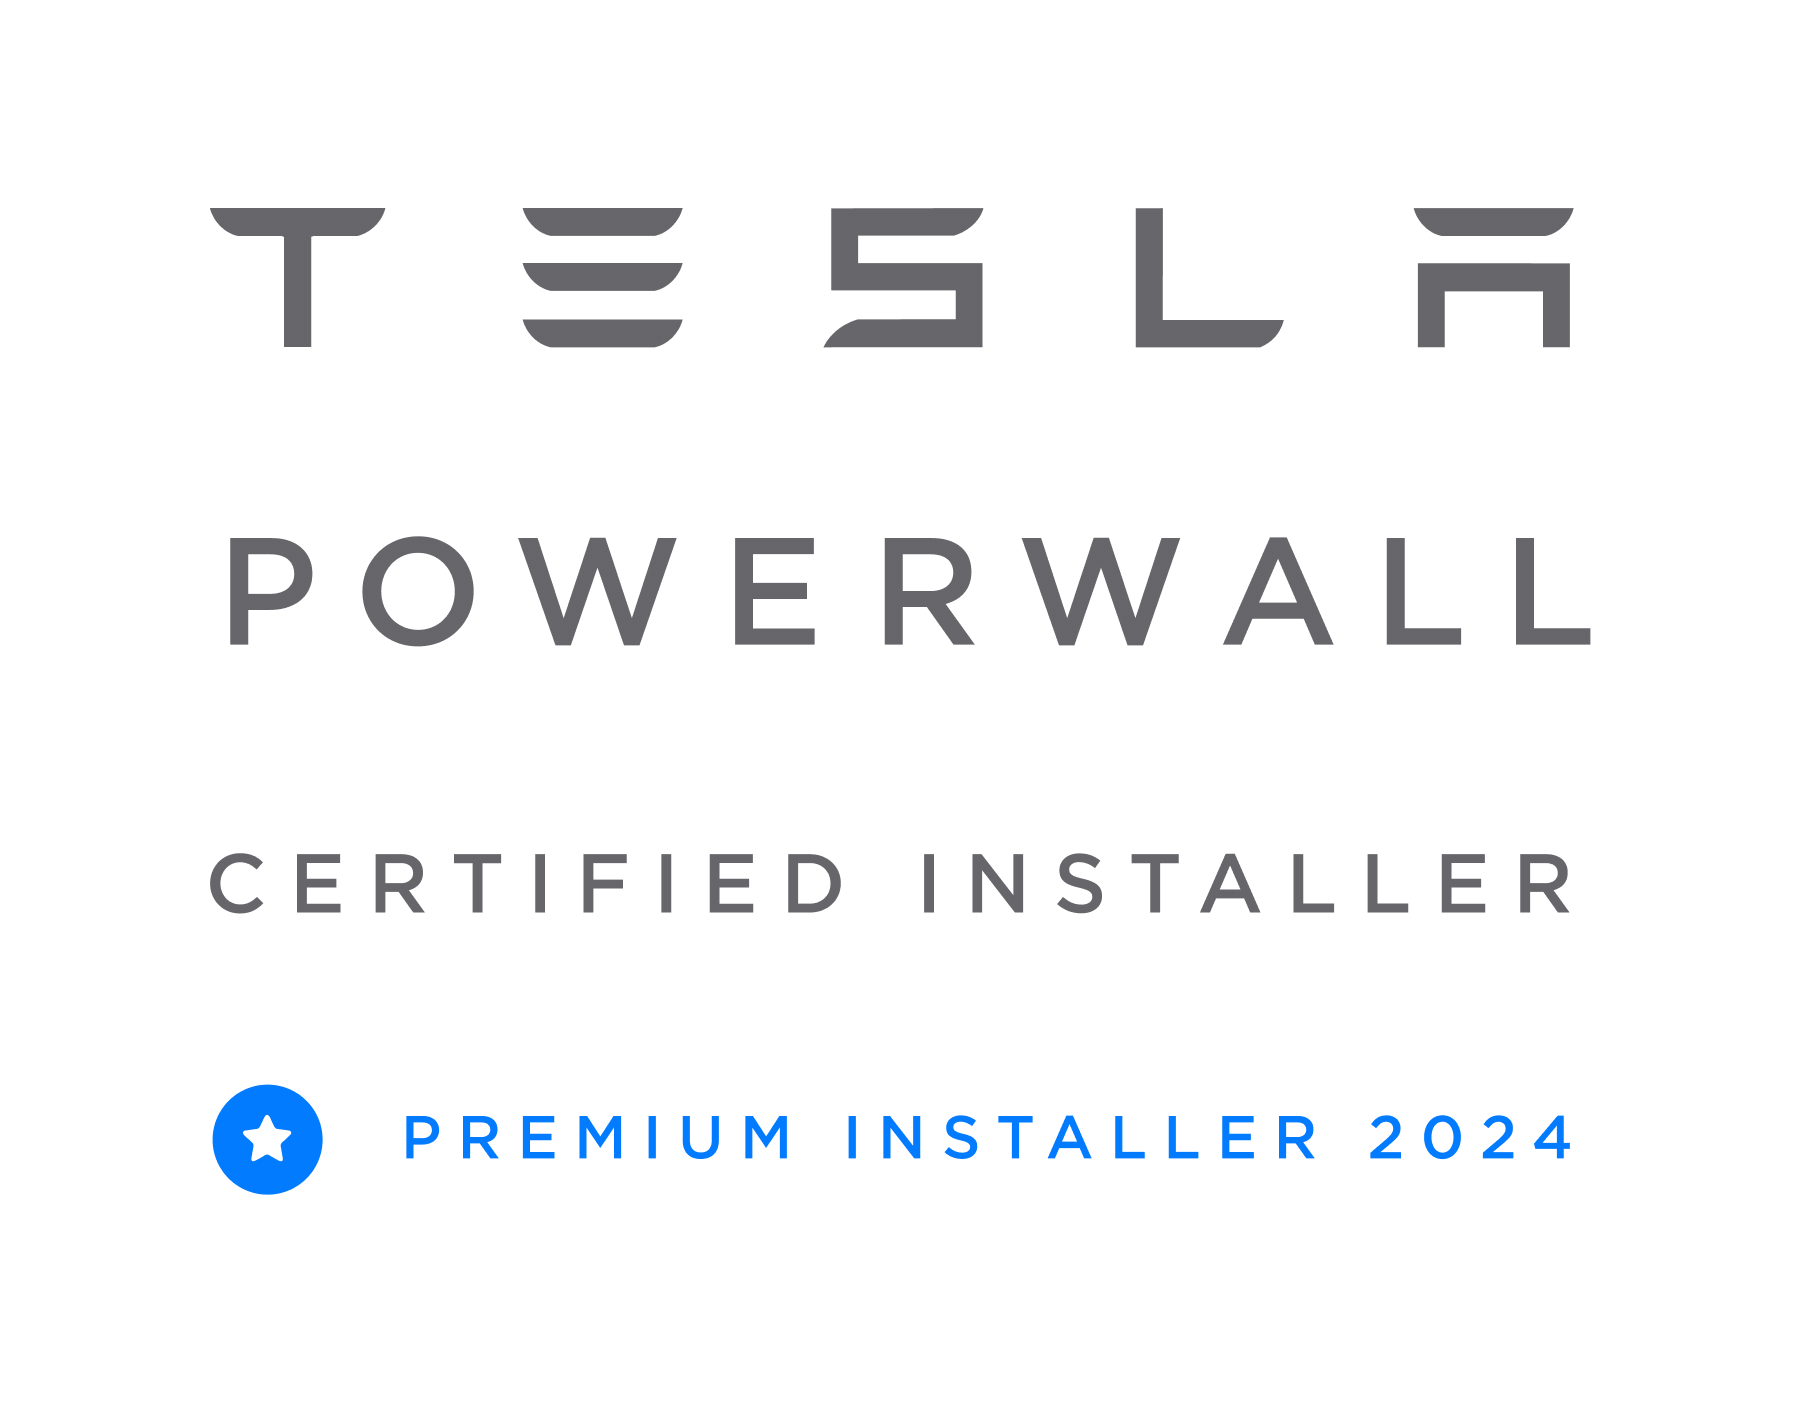 Spirit Energy Given Tesla Premium Installer Status for 2024